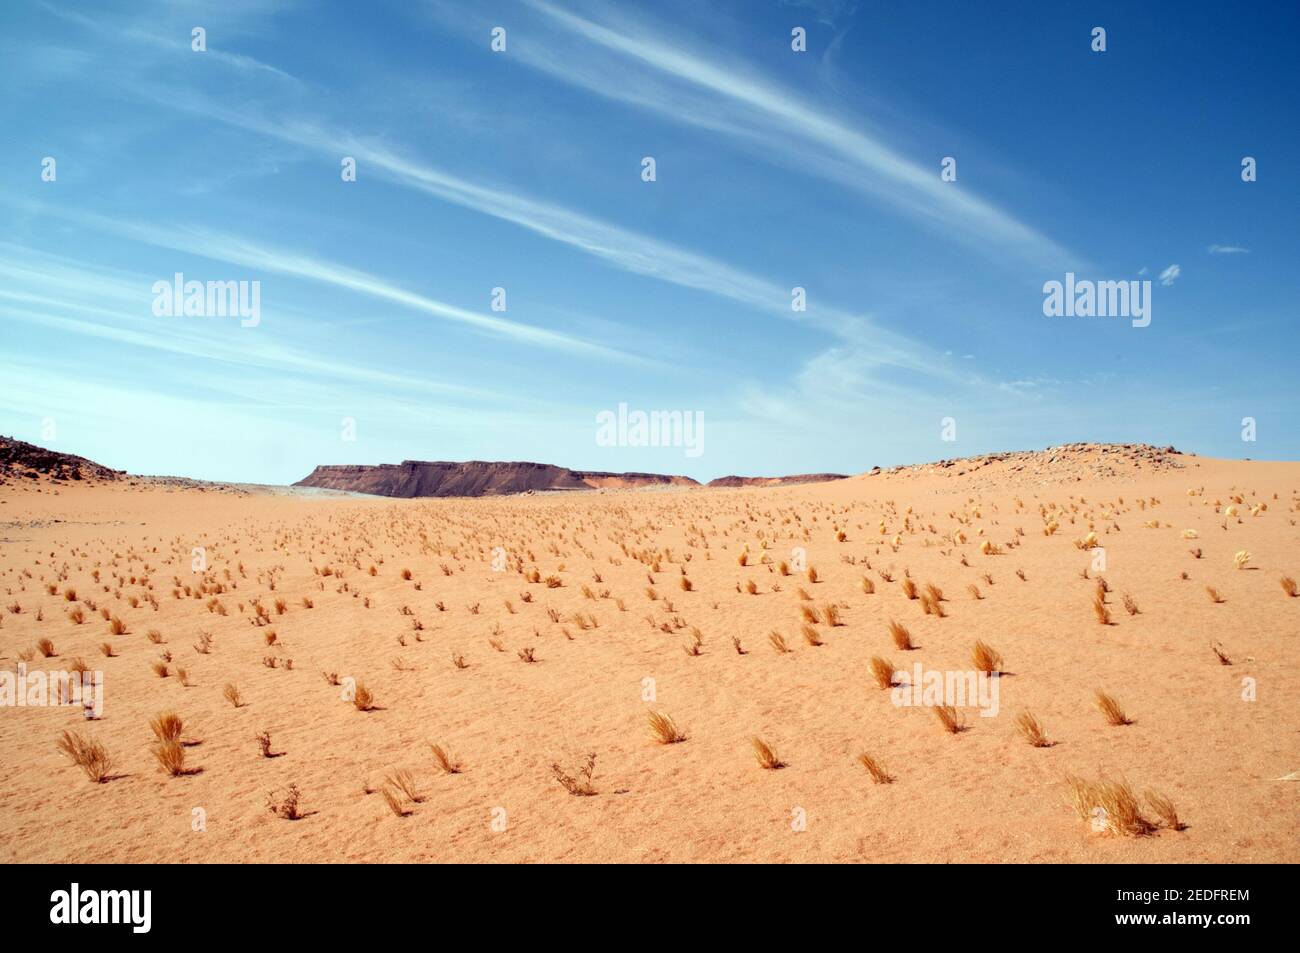 Piccola vegetazione vegetale che cresce attraverso la sabbia sull'altopiano di Gilf Kebir nella regione del deserto occidentale del Sahara, nell'Egitto sudoccidentale. Foto Stock